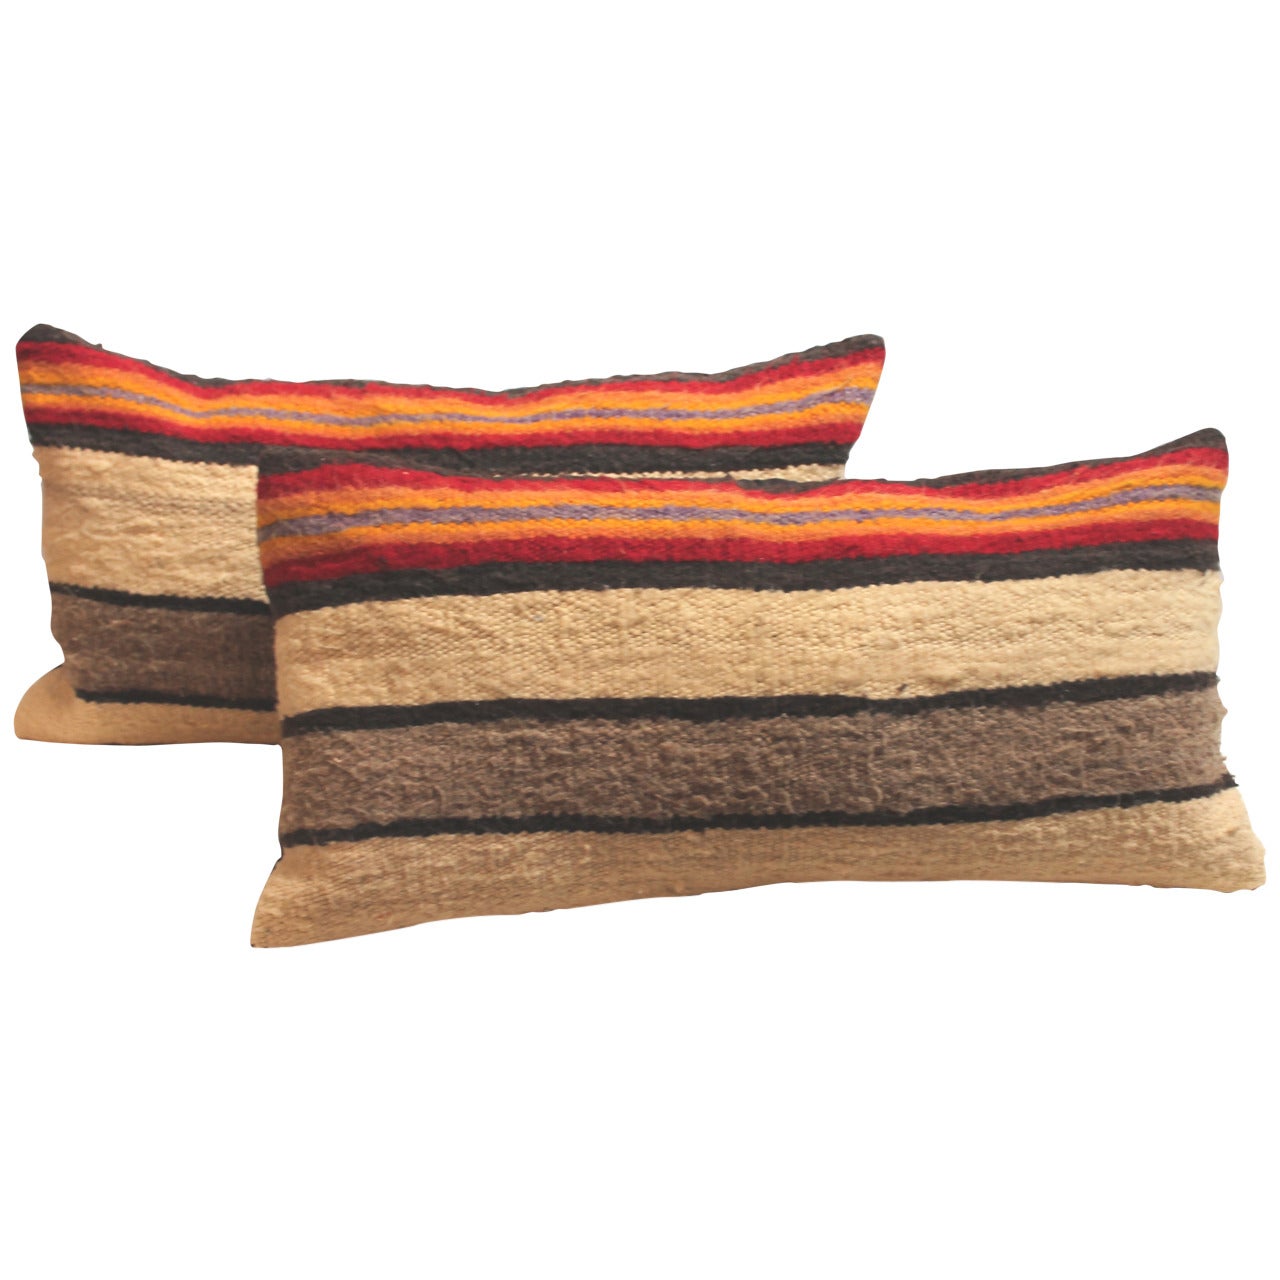 Navajo Indian Weaving Saddle Blanket Pillows